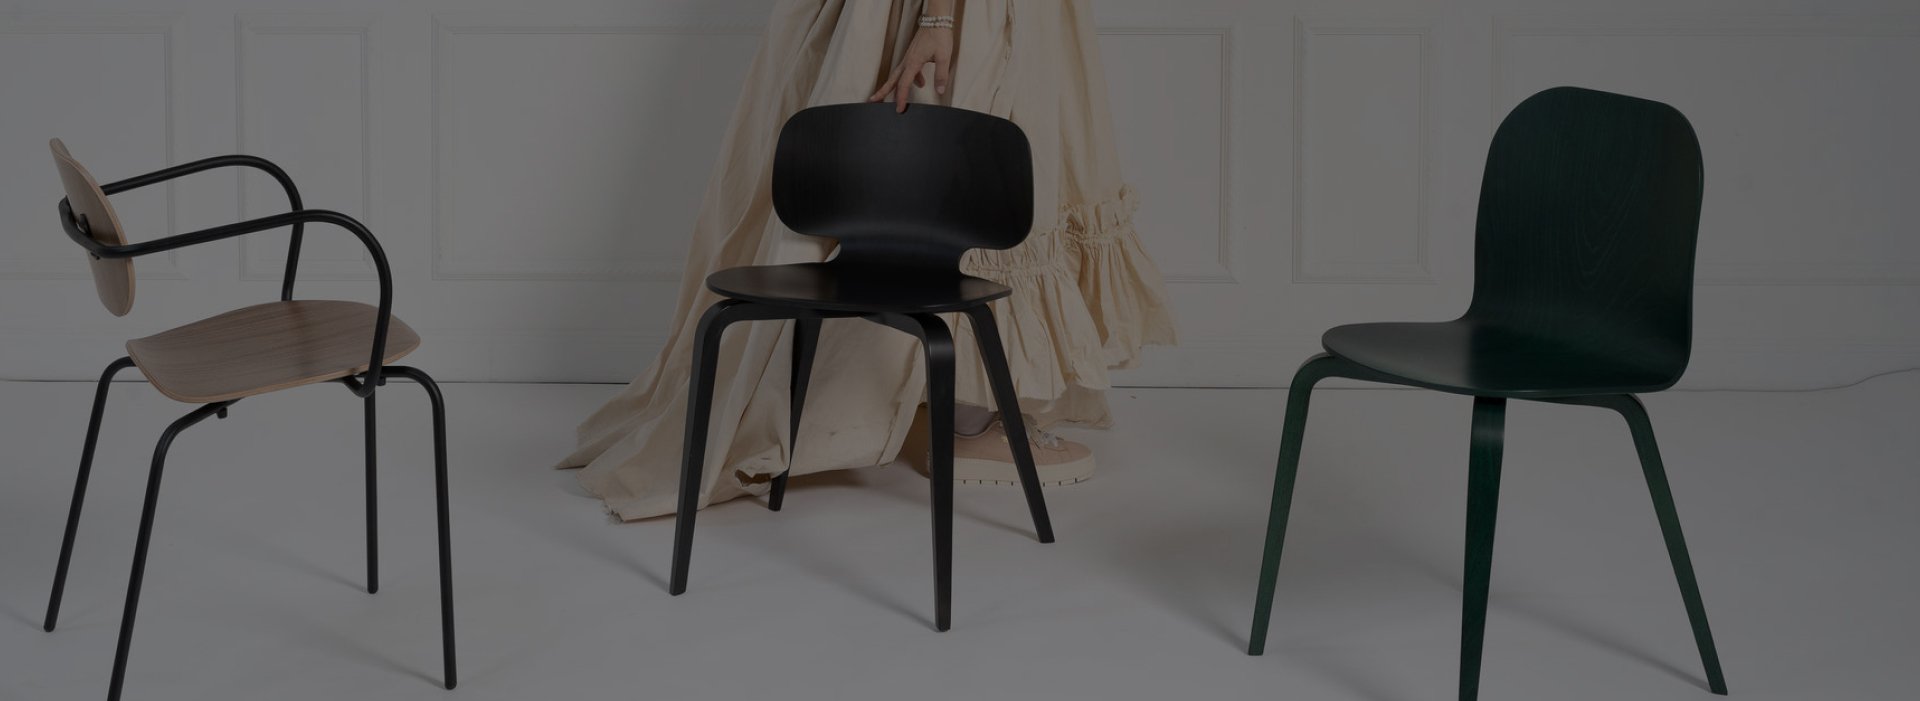 Des chaises design fabriquées écologiquement en France